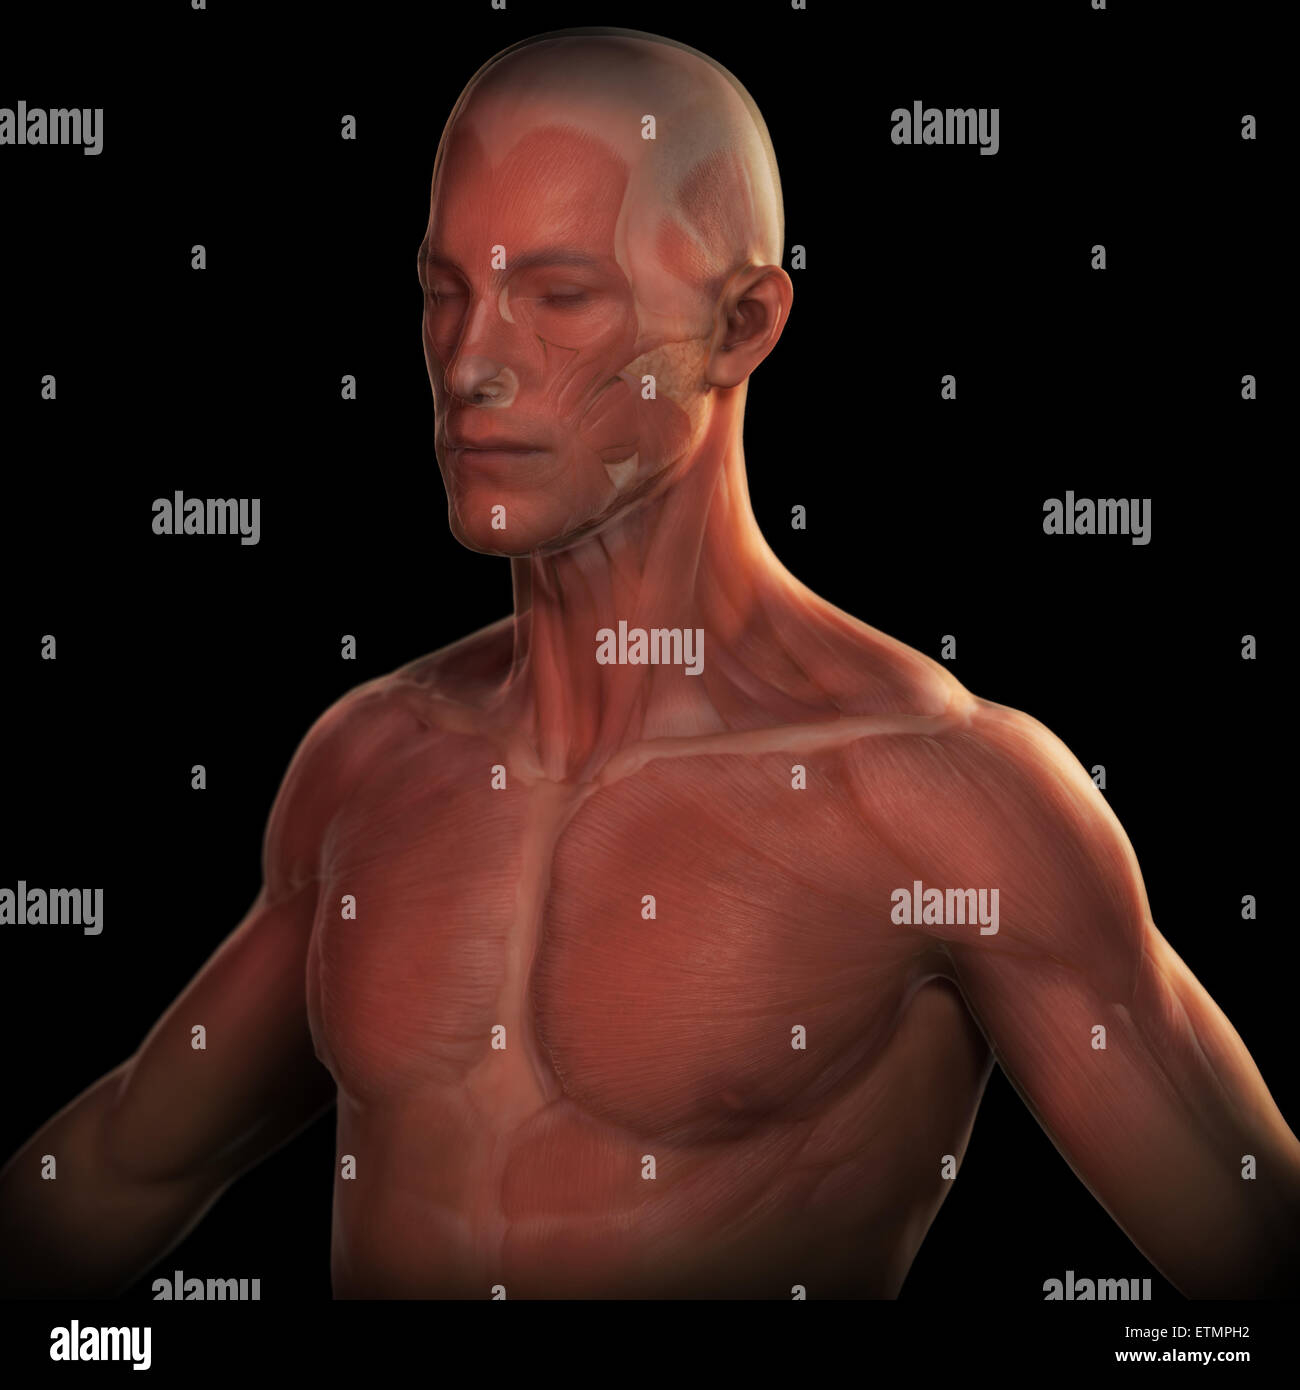 Imagen conceptual de la cara y parte superior del cuerpo con la musculatura visible bajo la piel. Foto de stock